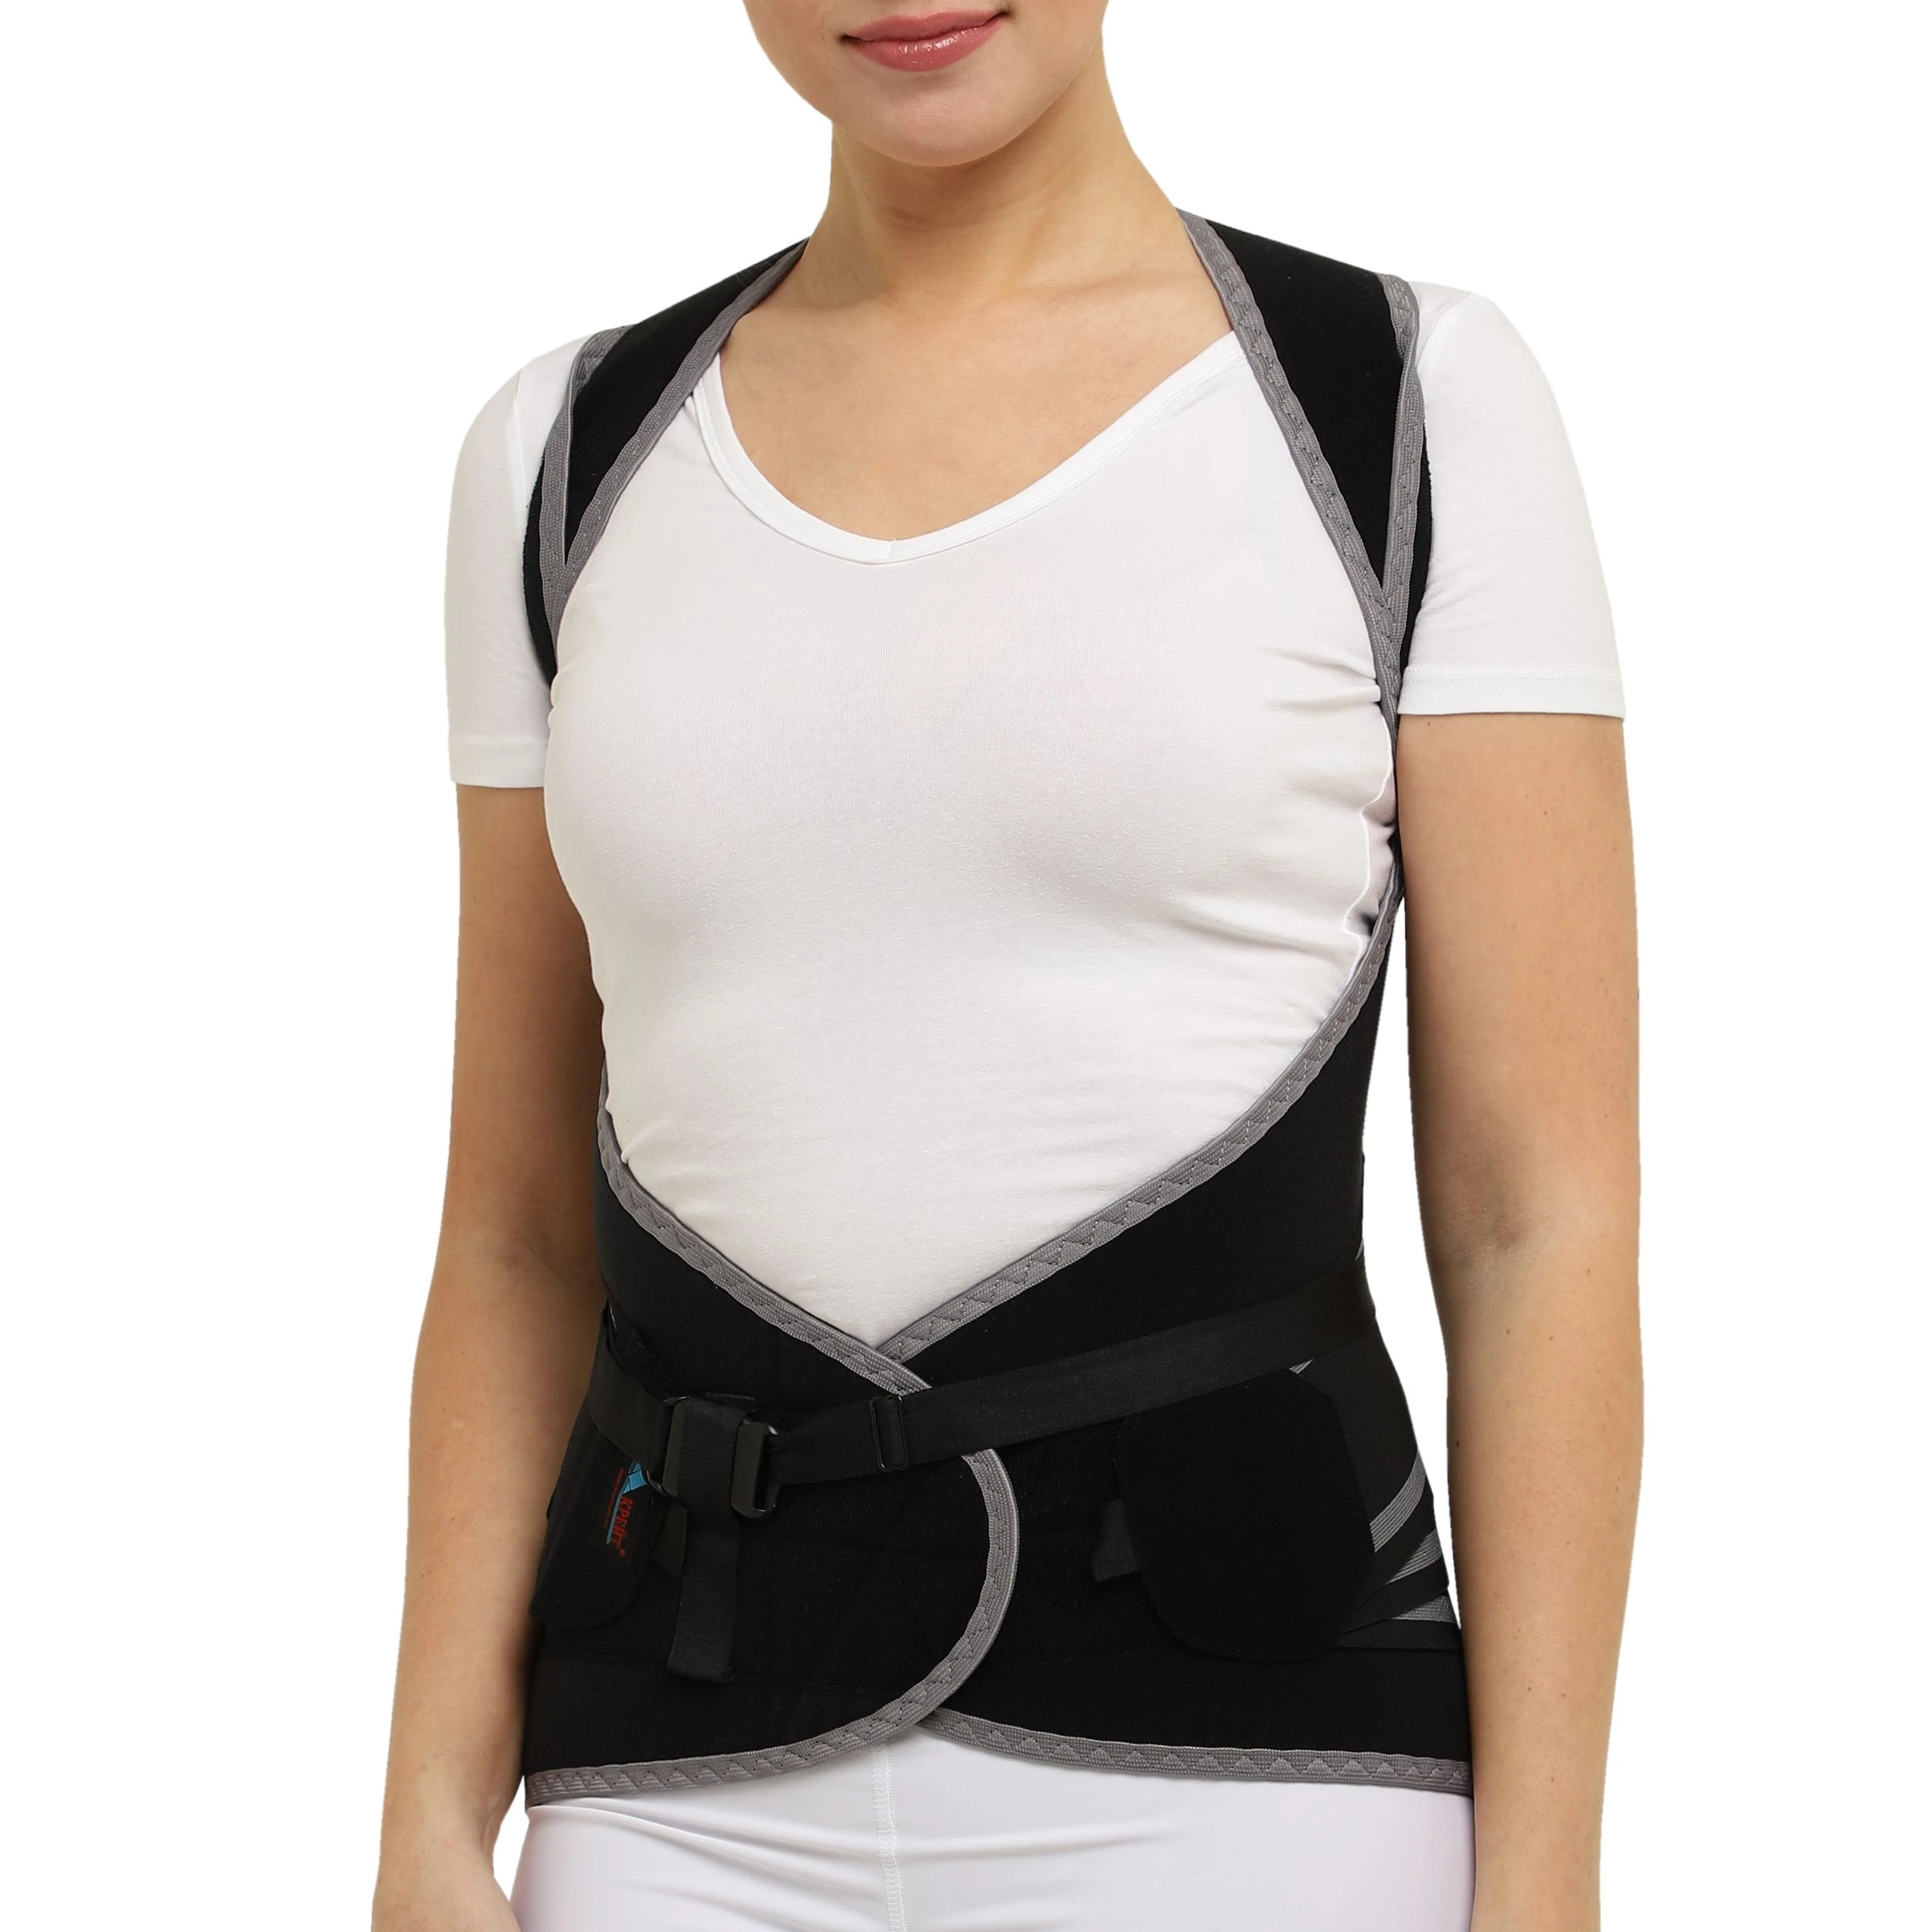 Corset orthopédique ceinture thoracique b 2503. Pansement médical sur le  dos, ceinture pour le soutien de la colonne vertébrale. | AliExpress